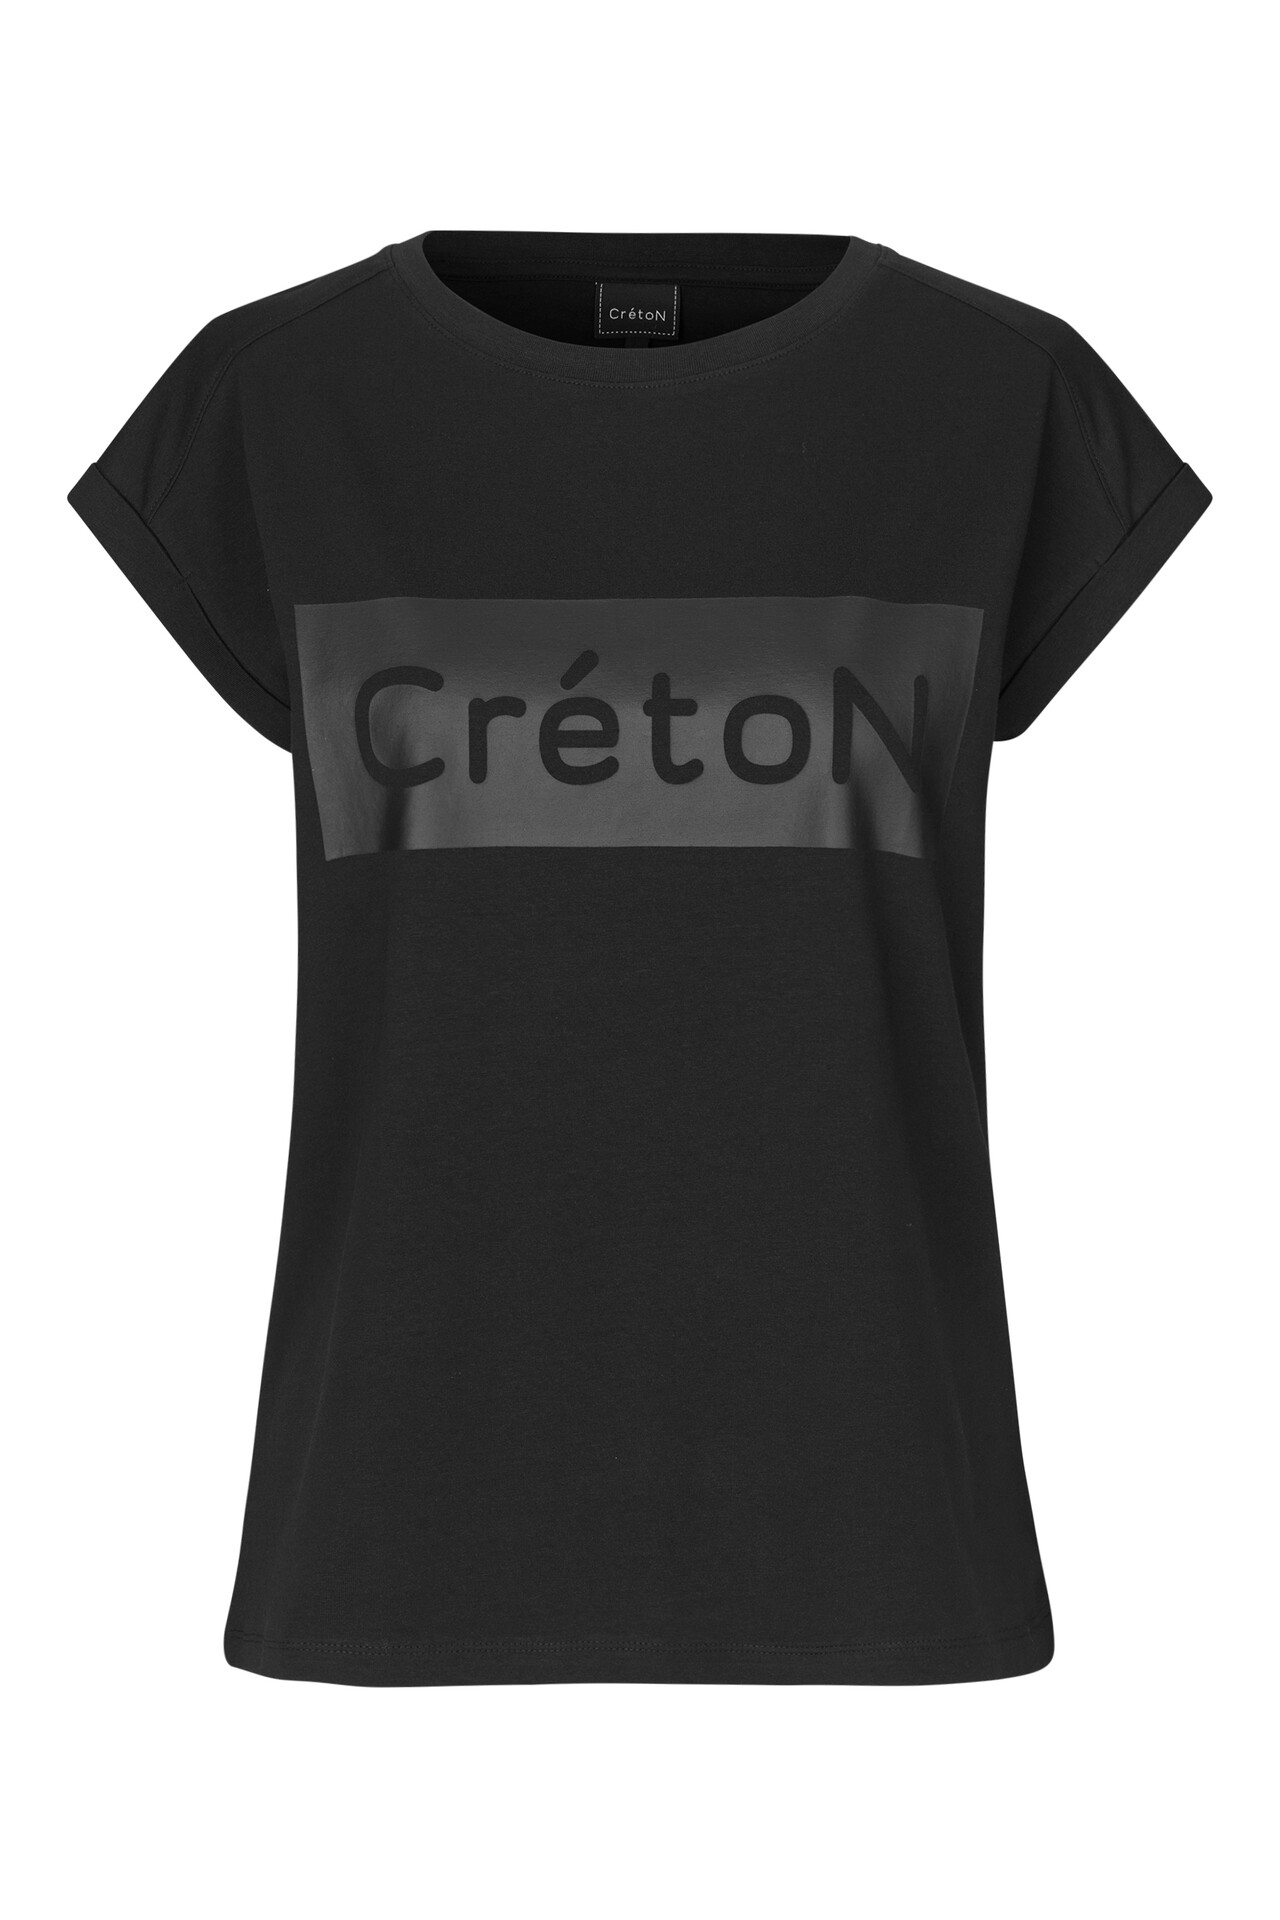 CRÉTON CRTenley C T-shirt  (SORT M)